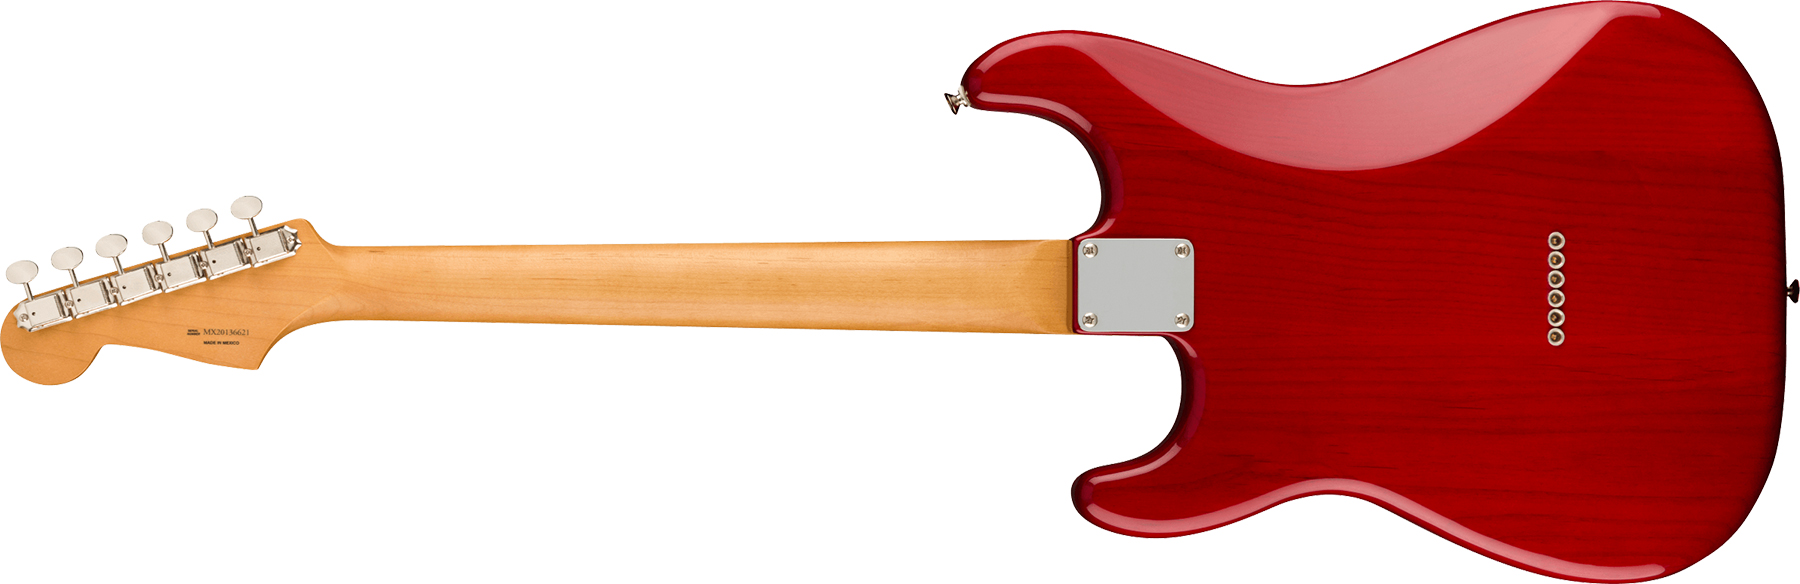 Fender Strat Noventa Mex Ss Ht Pf +housse - Crimson Red Transparent - E-Gitarre in Str-Form - Variation 1